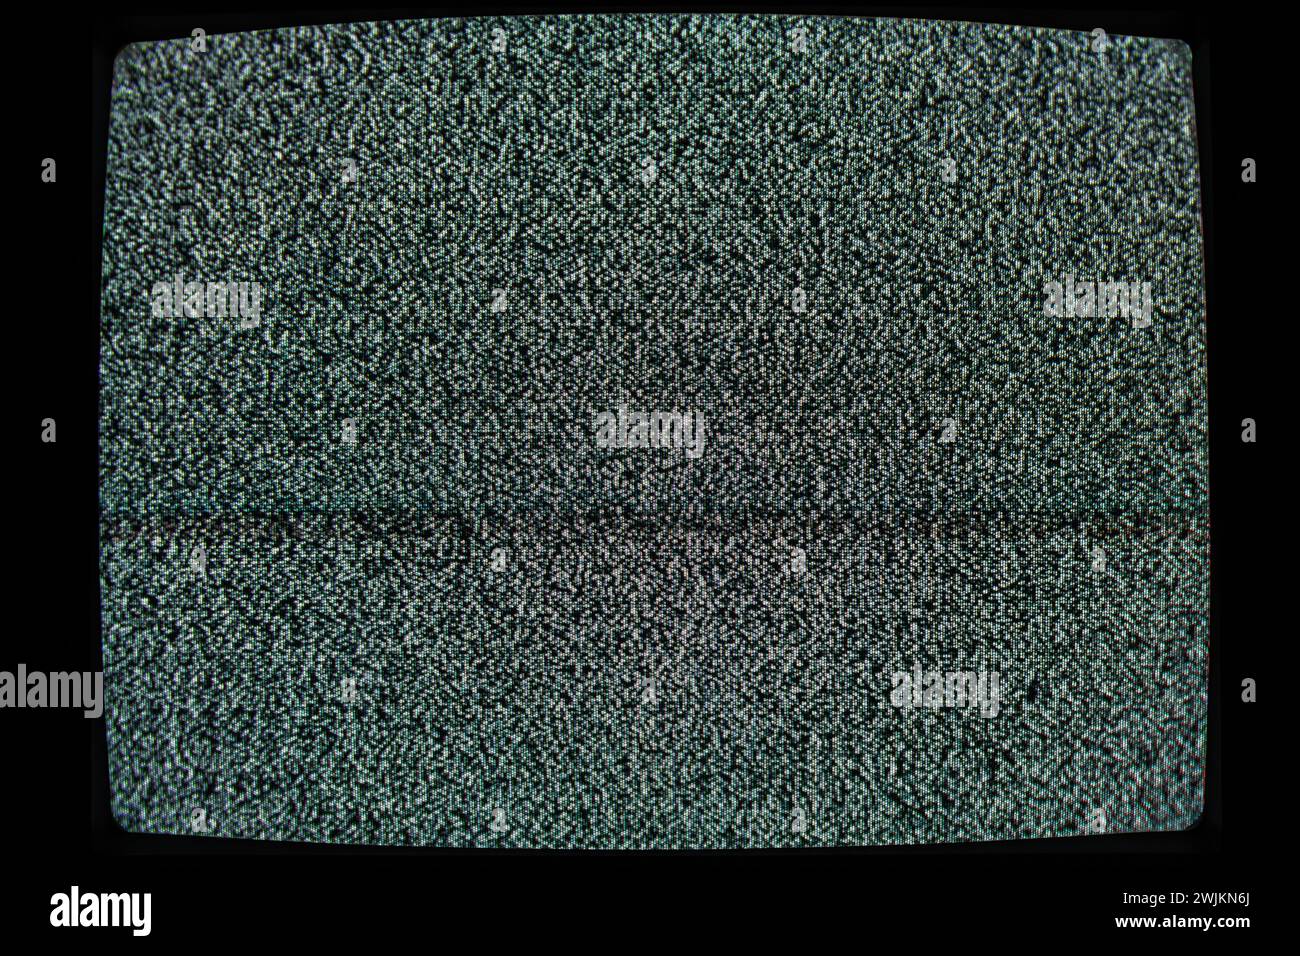 Fernsehbildschirm mit statischem Rauschen, das auf eine Signalunterbrechung oder keine Übertragung hindeutet Stockfoto